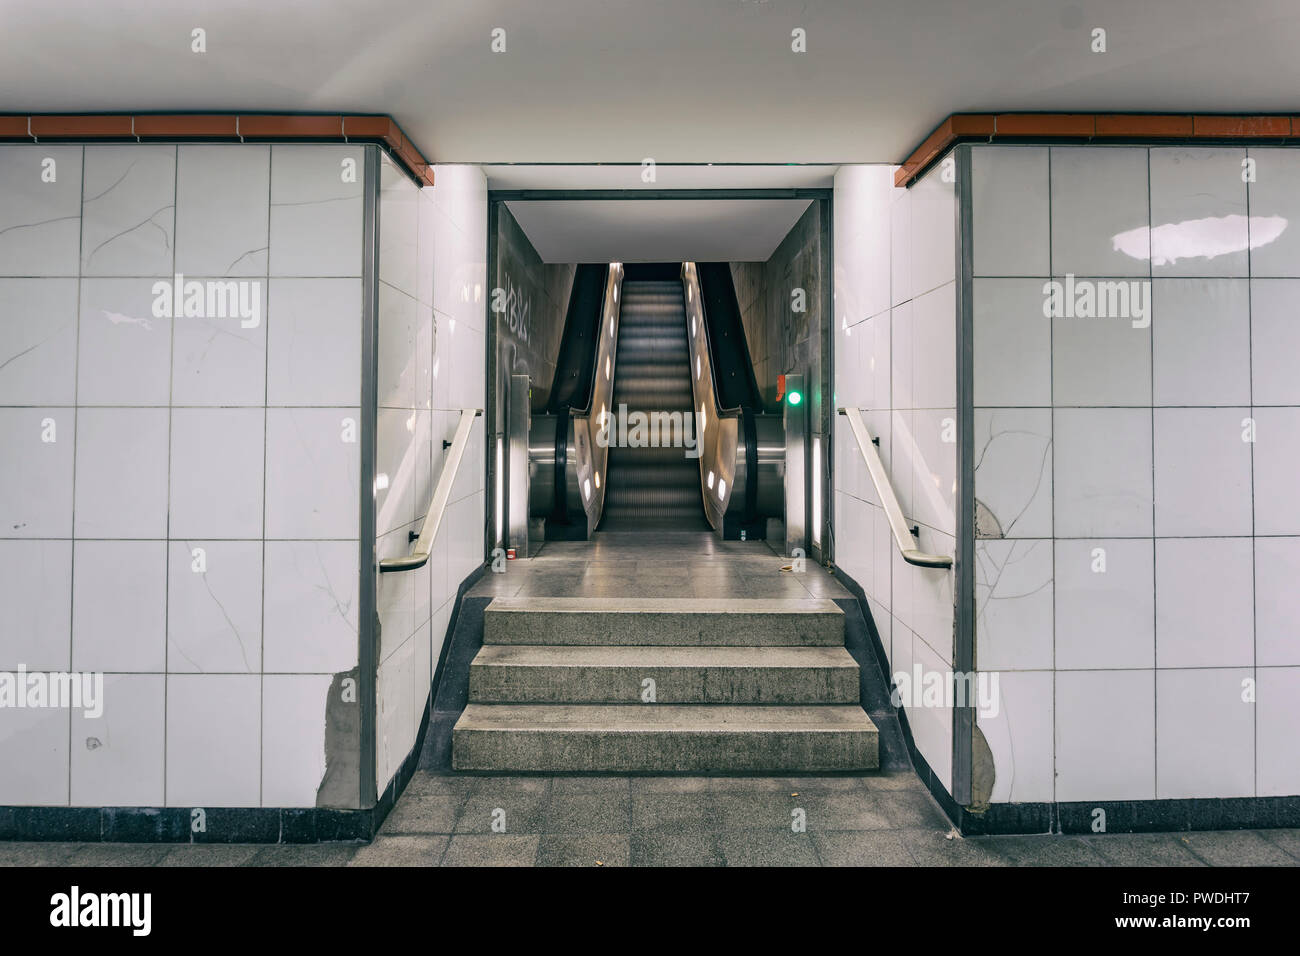 Berlino, Germania, 10 Ottobre 2018: Escalator in corrispondenza di una stazione della metropolitana Foto Stock